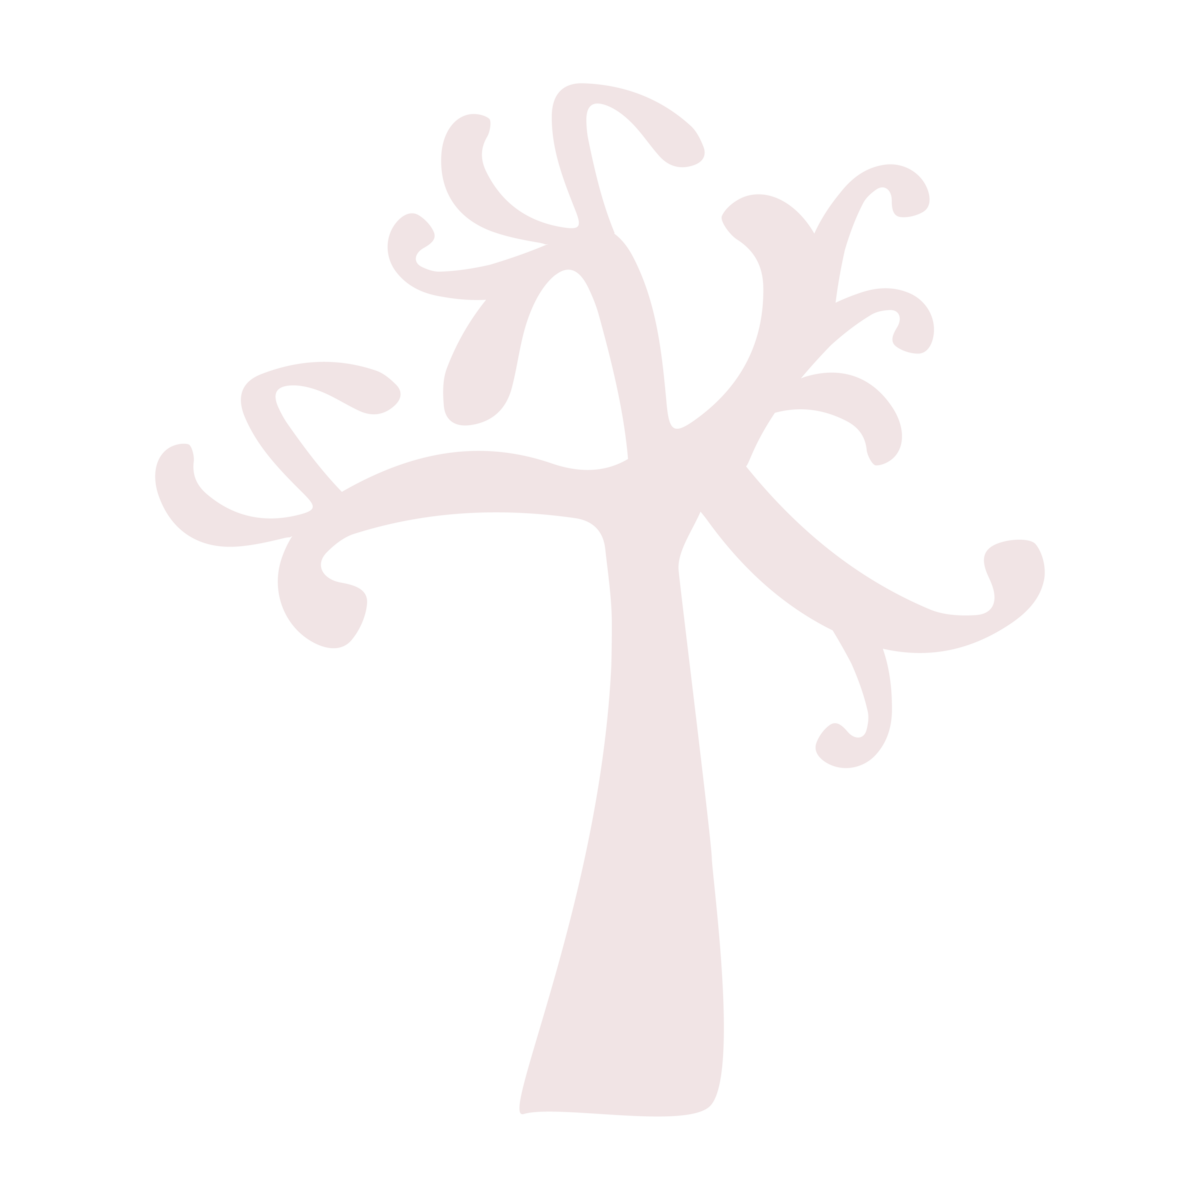 Tree graphic.